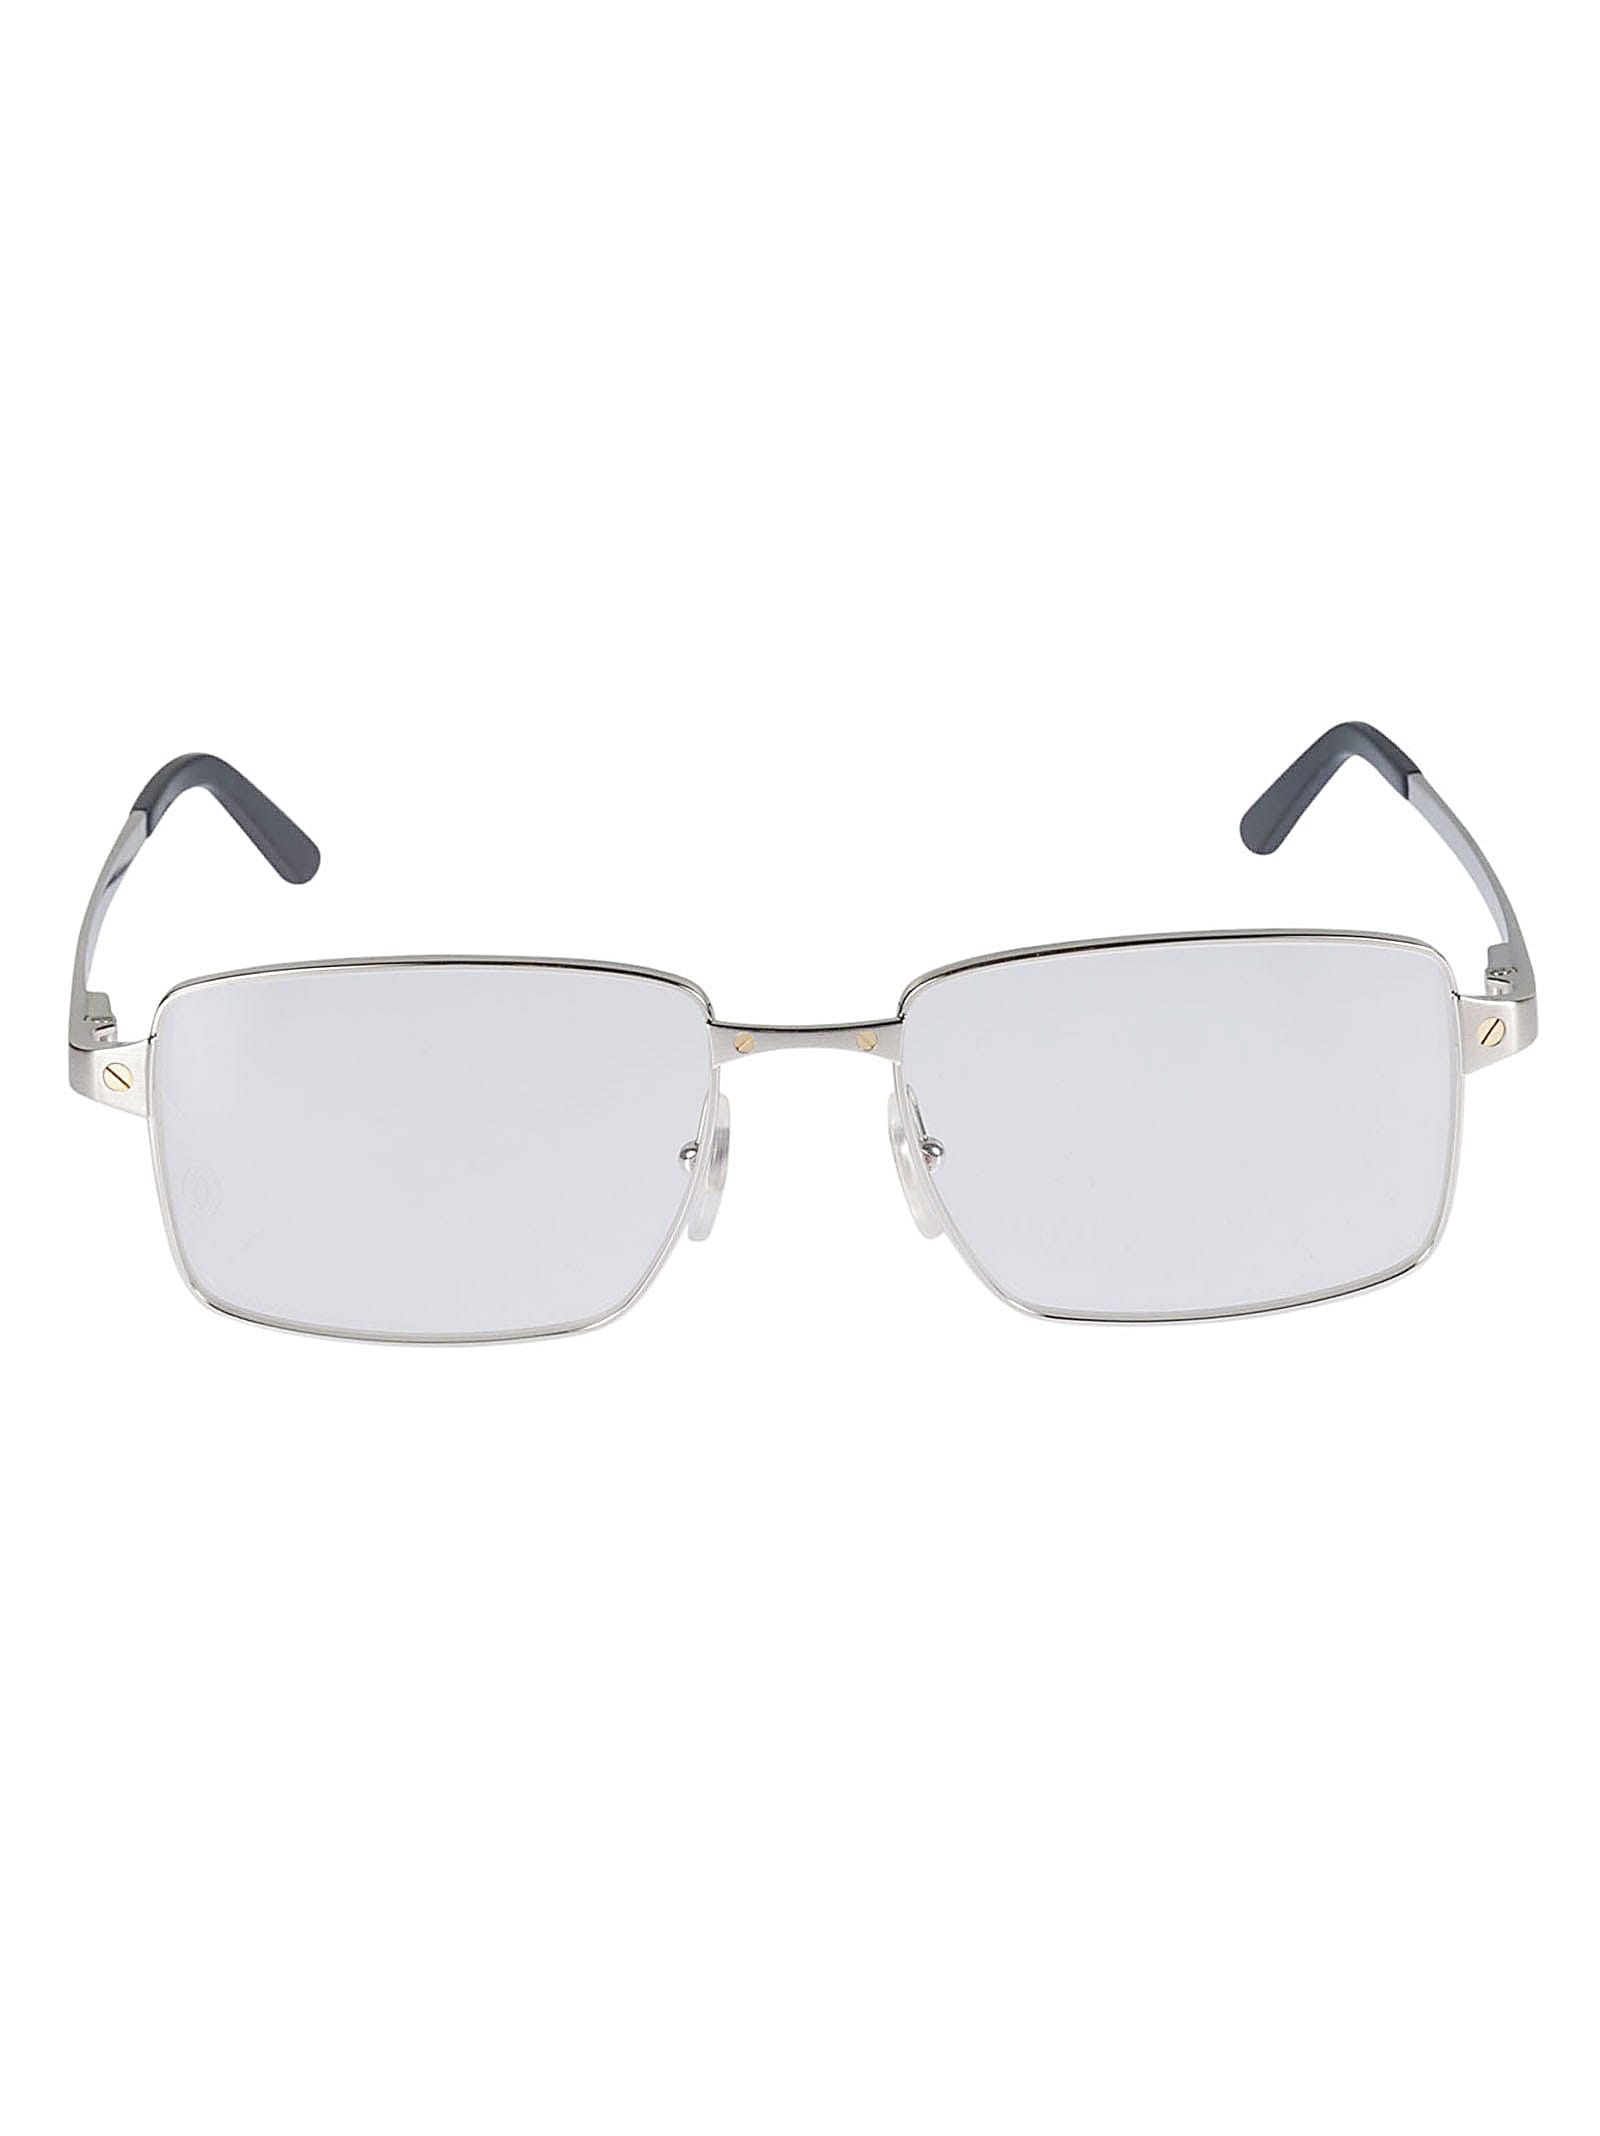 Cartier Santos De Glasses In Grigio | ModeSens